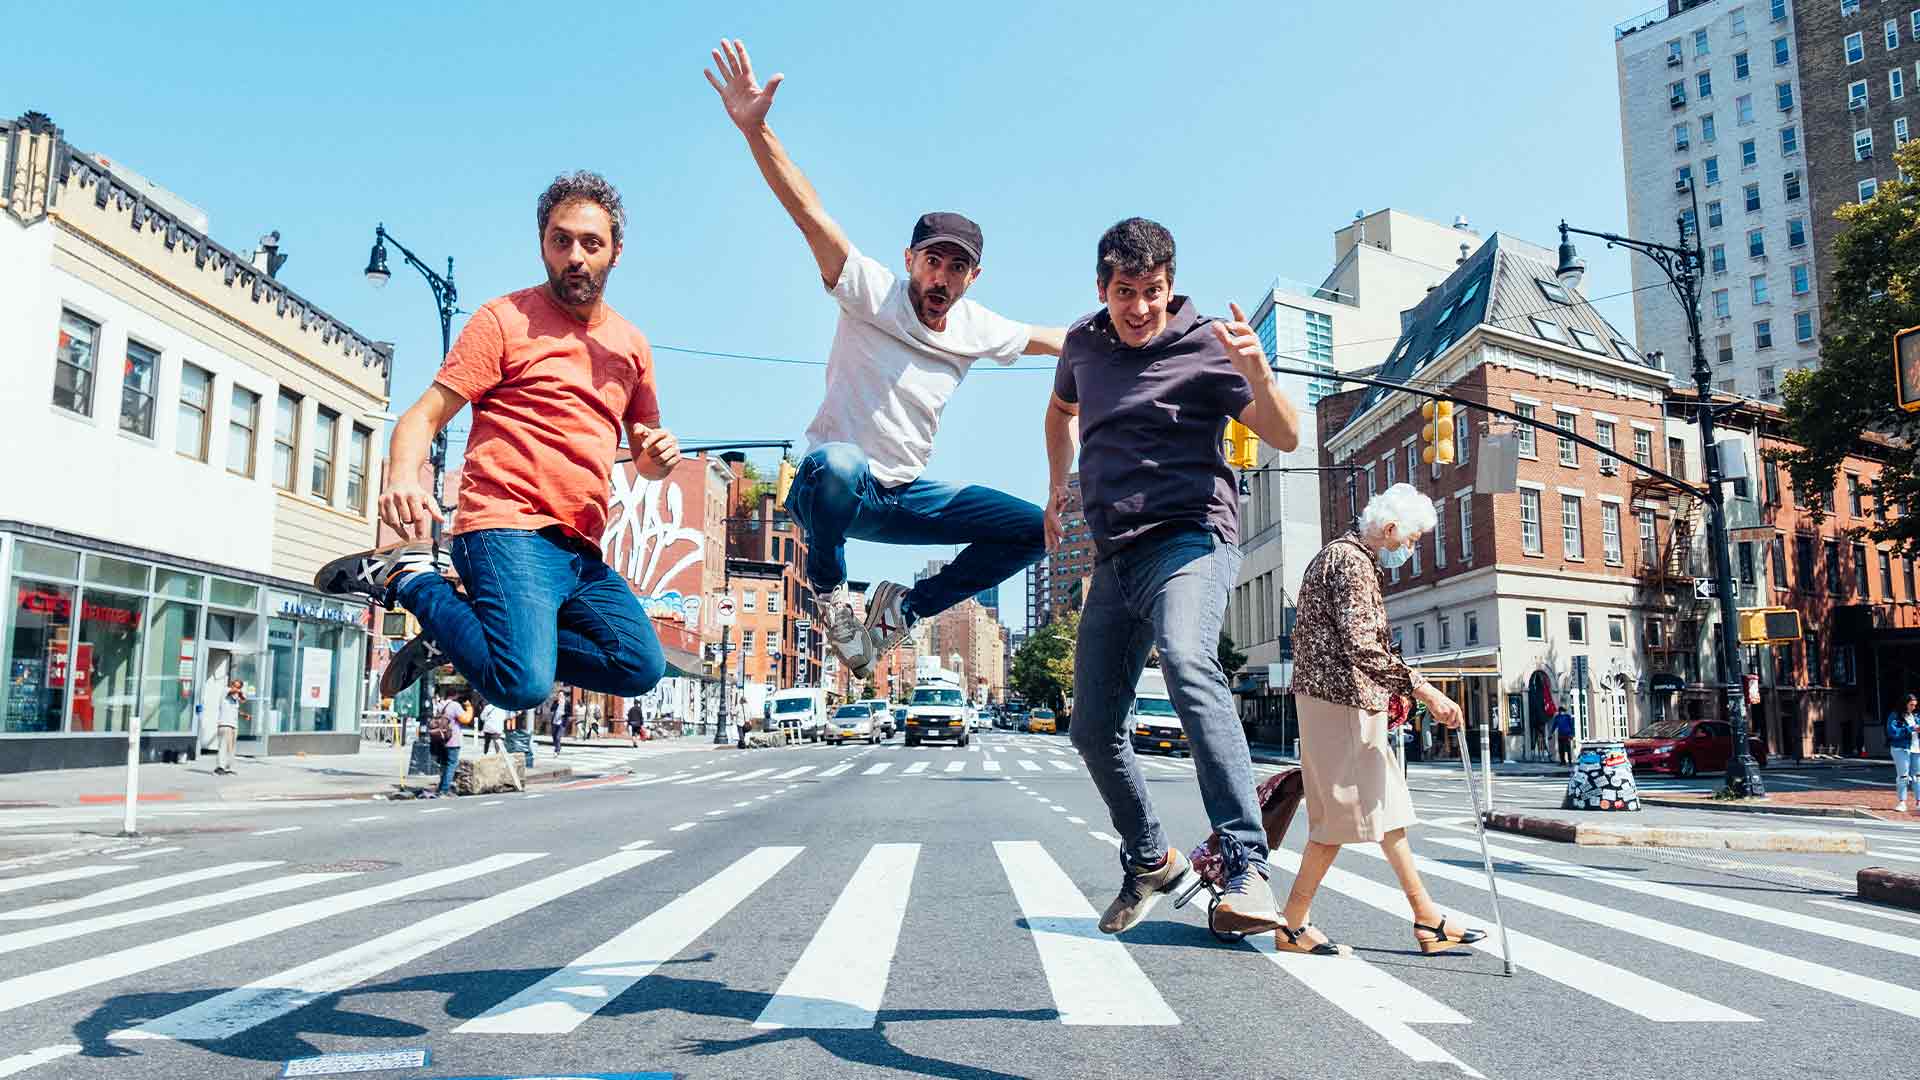 Els Amics de les Arts saltant al carrer